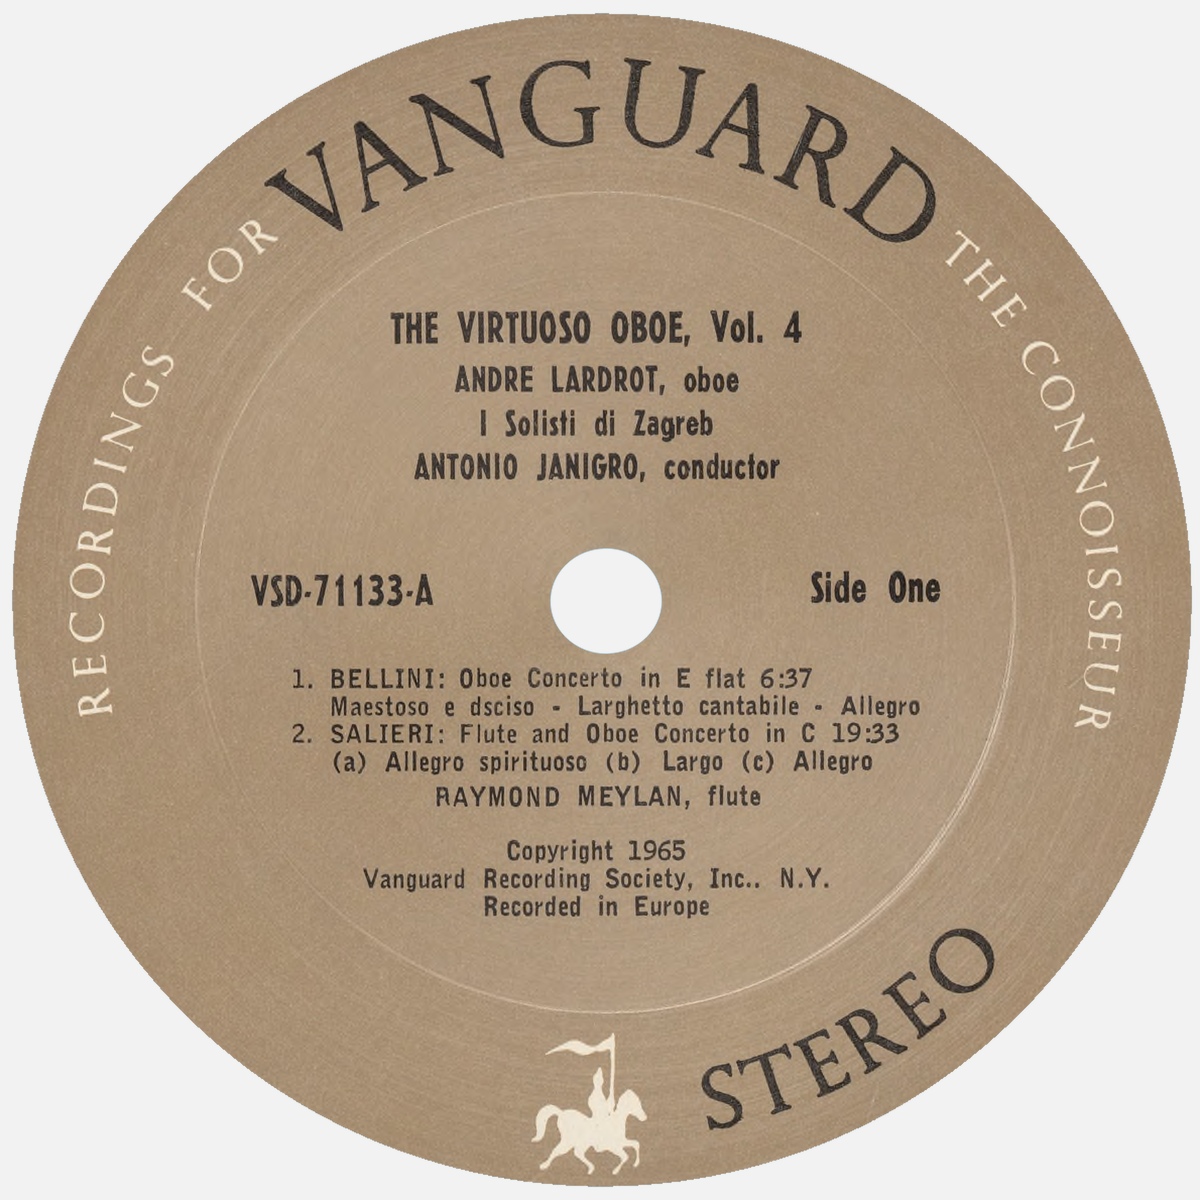 Étiquette recto du disque Vanguard VSD 71133